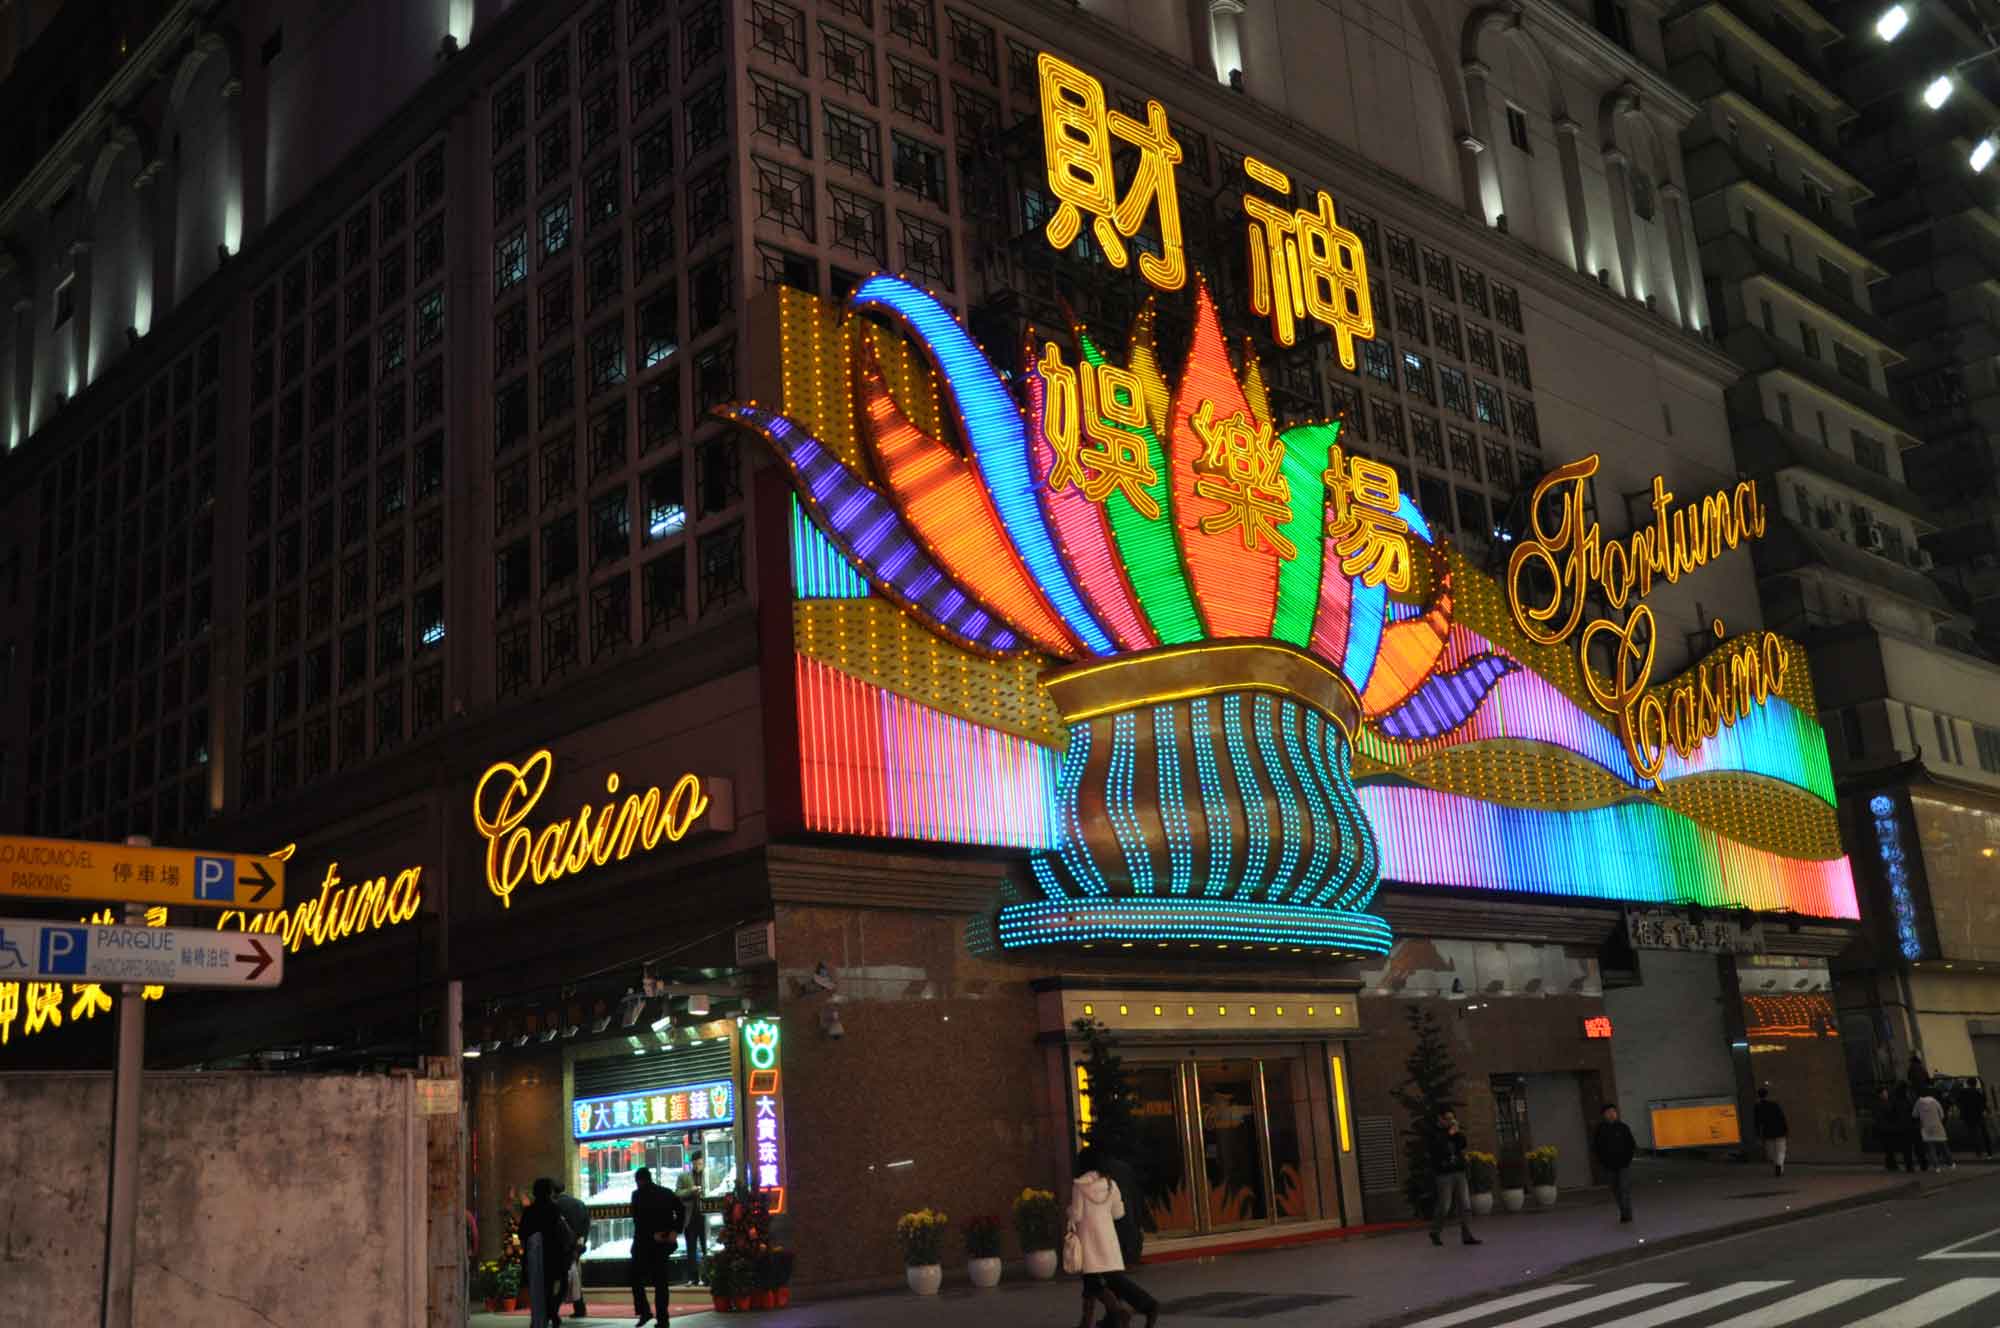 Macau satellite casinos